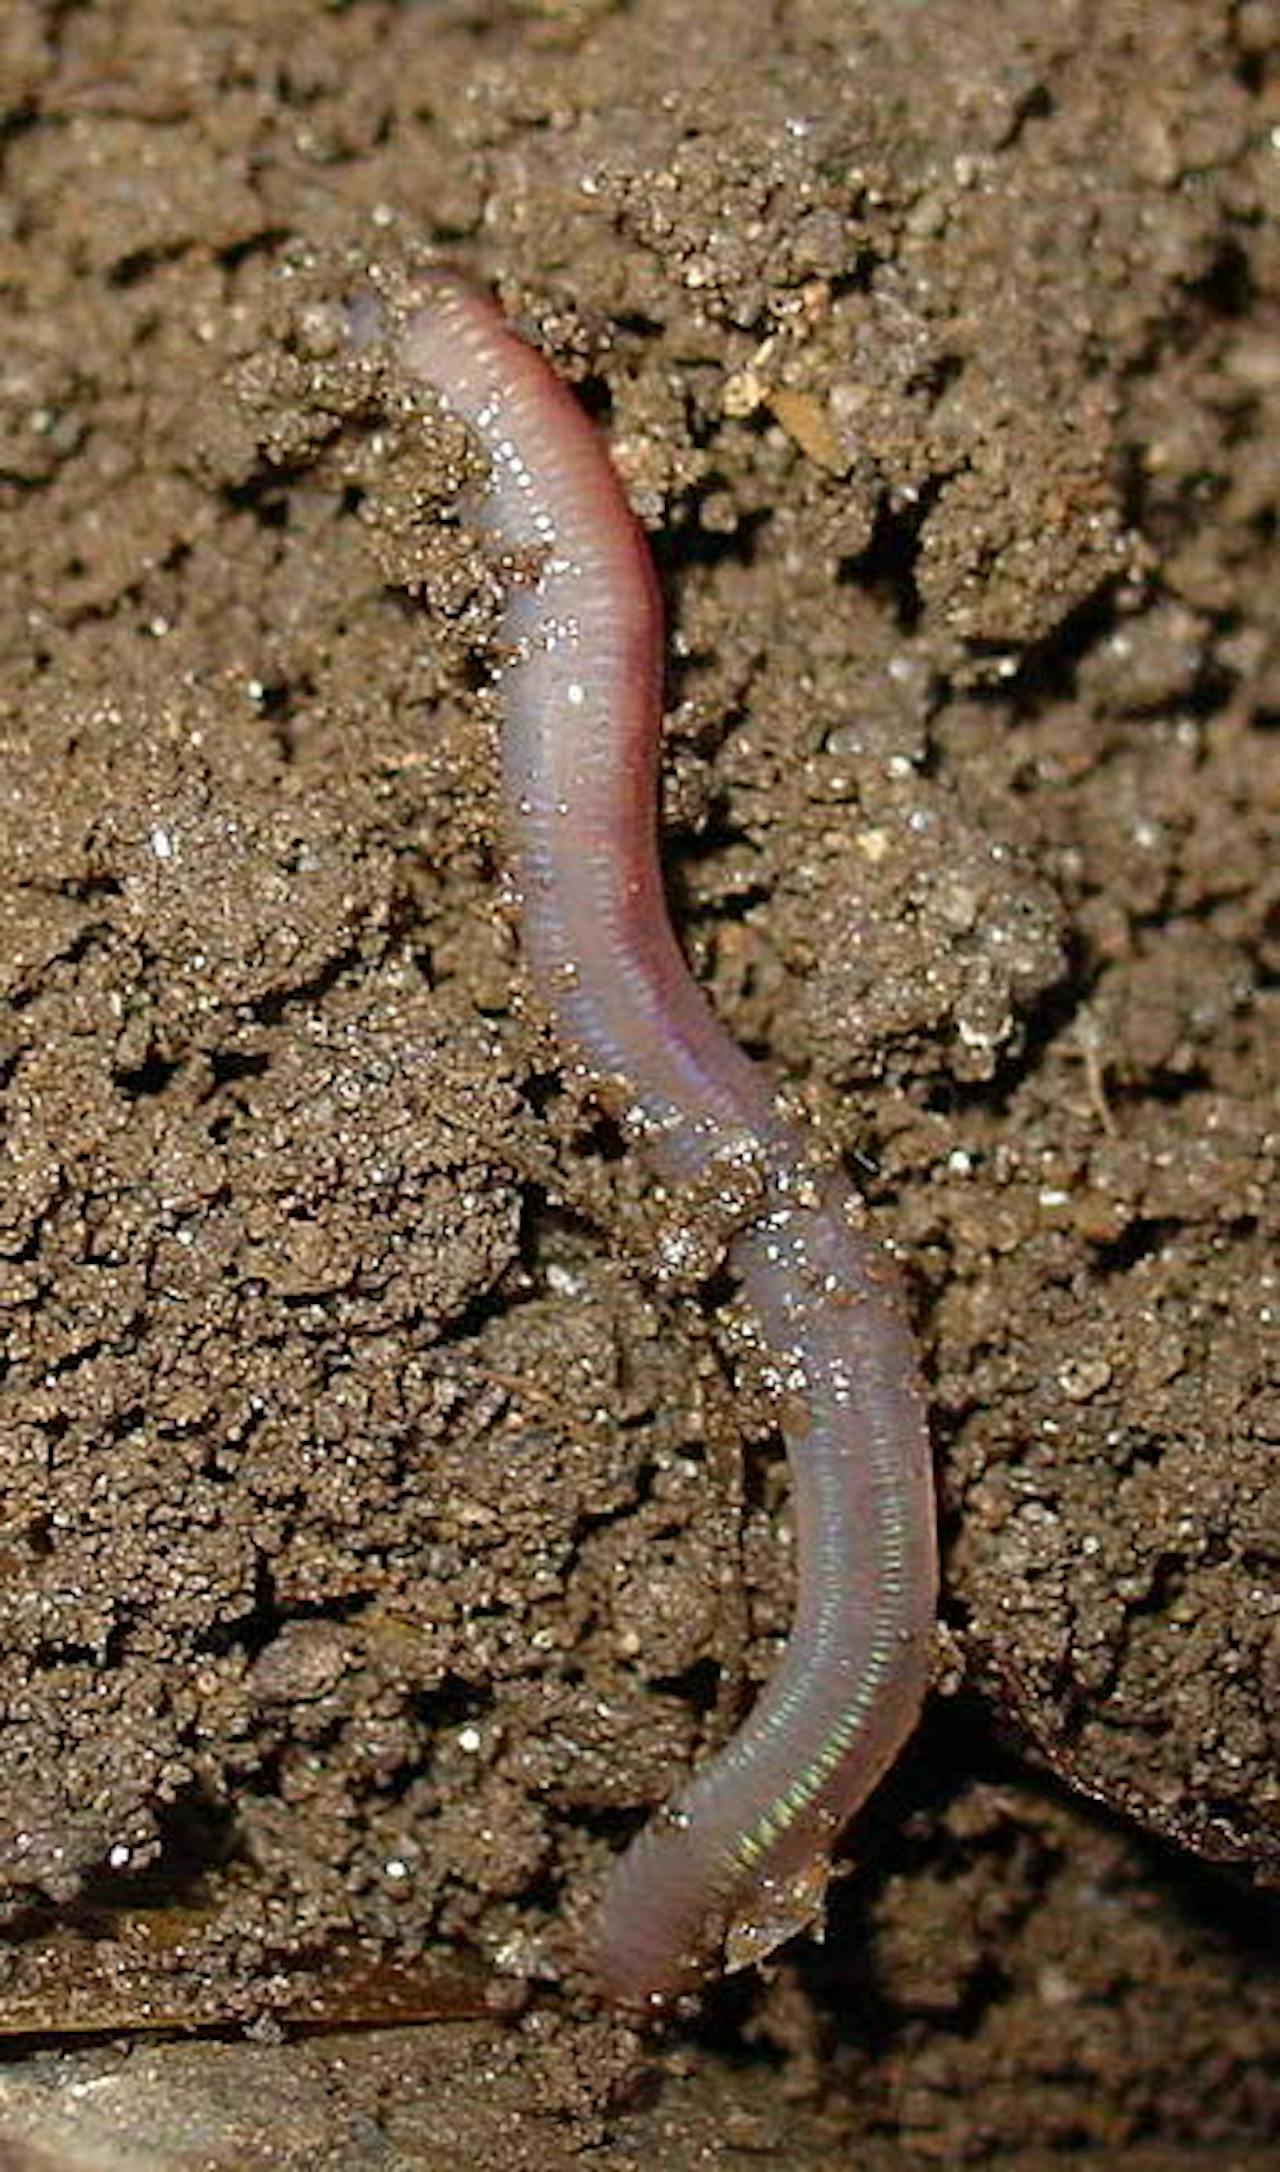 Een kleine worm die door de aarde kruipt.